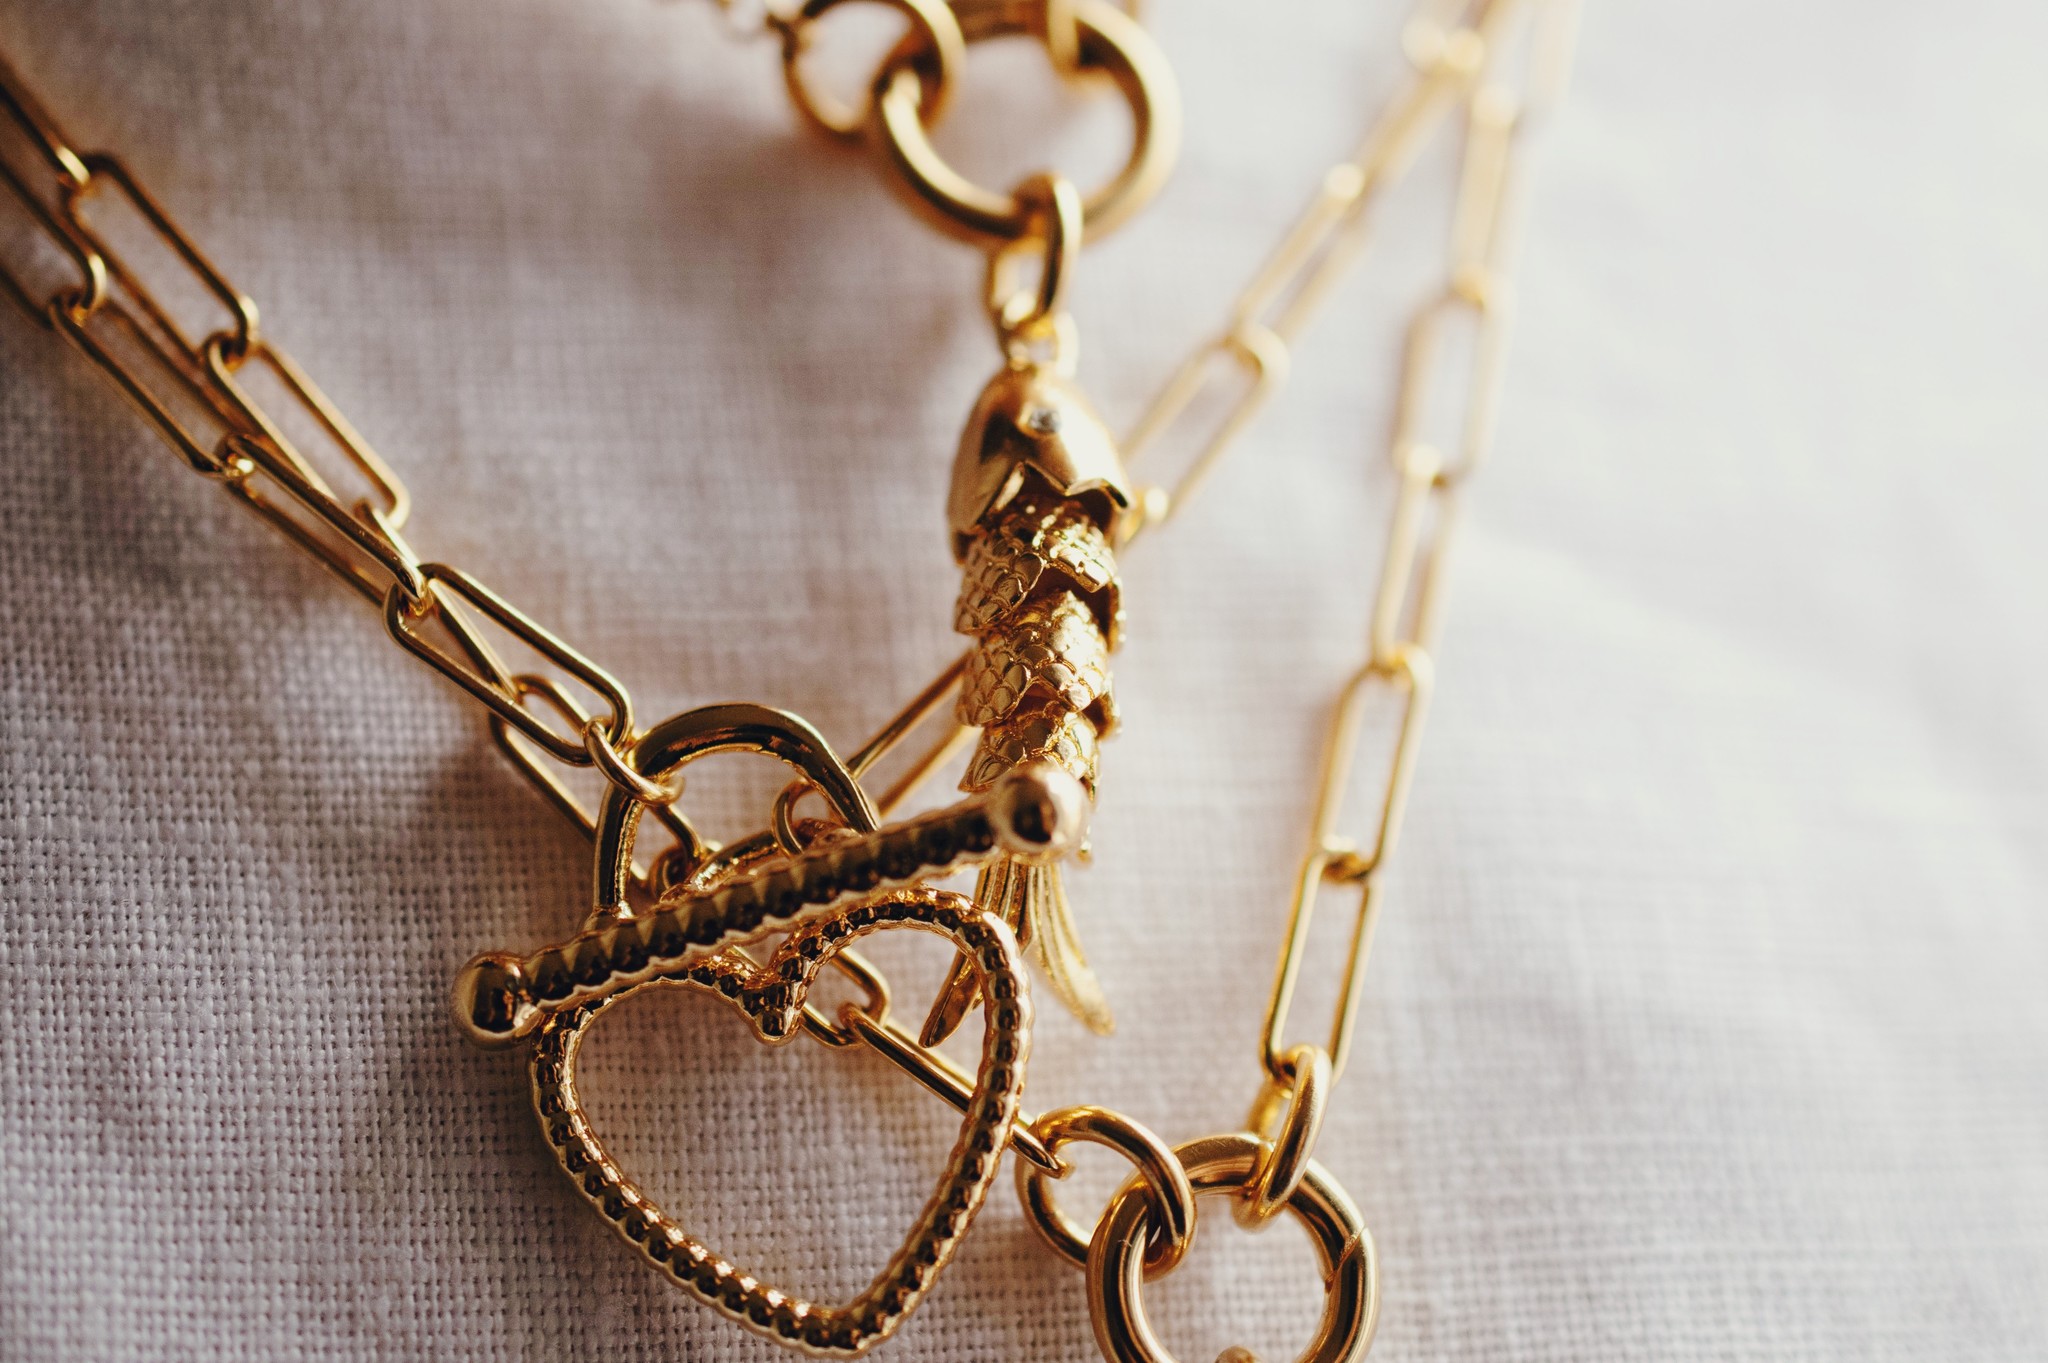 London Paperclip Connector Chain Necklace by Fallen Aristocrat - The Paris  Market